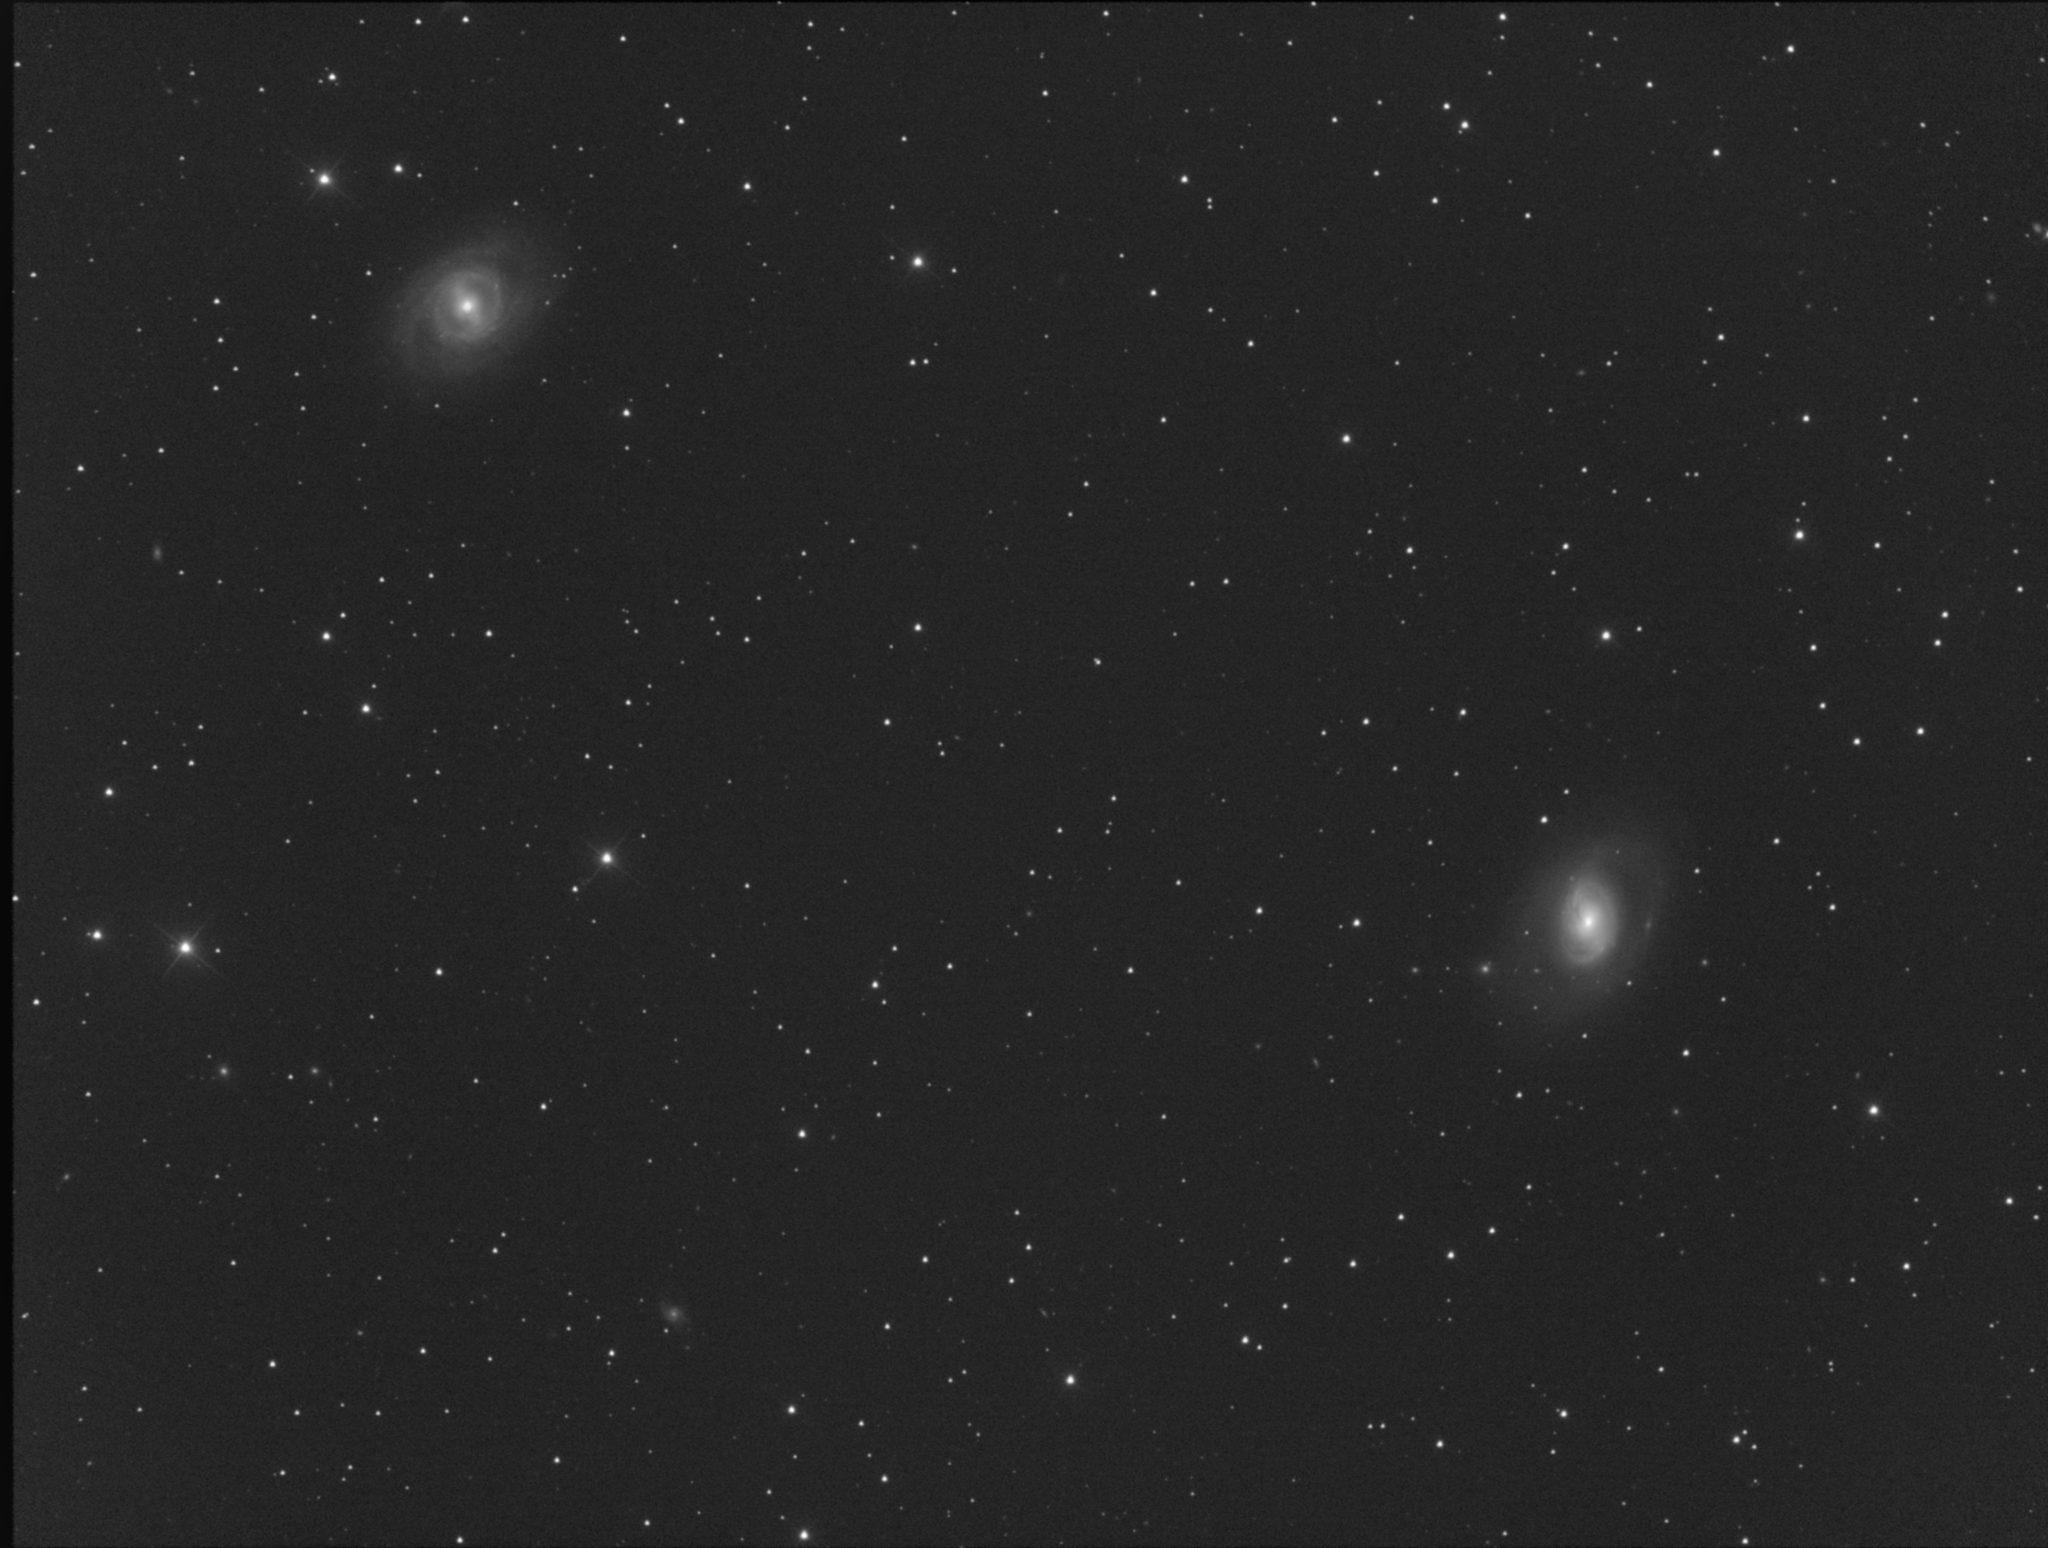 Messier 95 (en haut à gauche et M 96